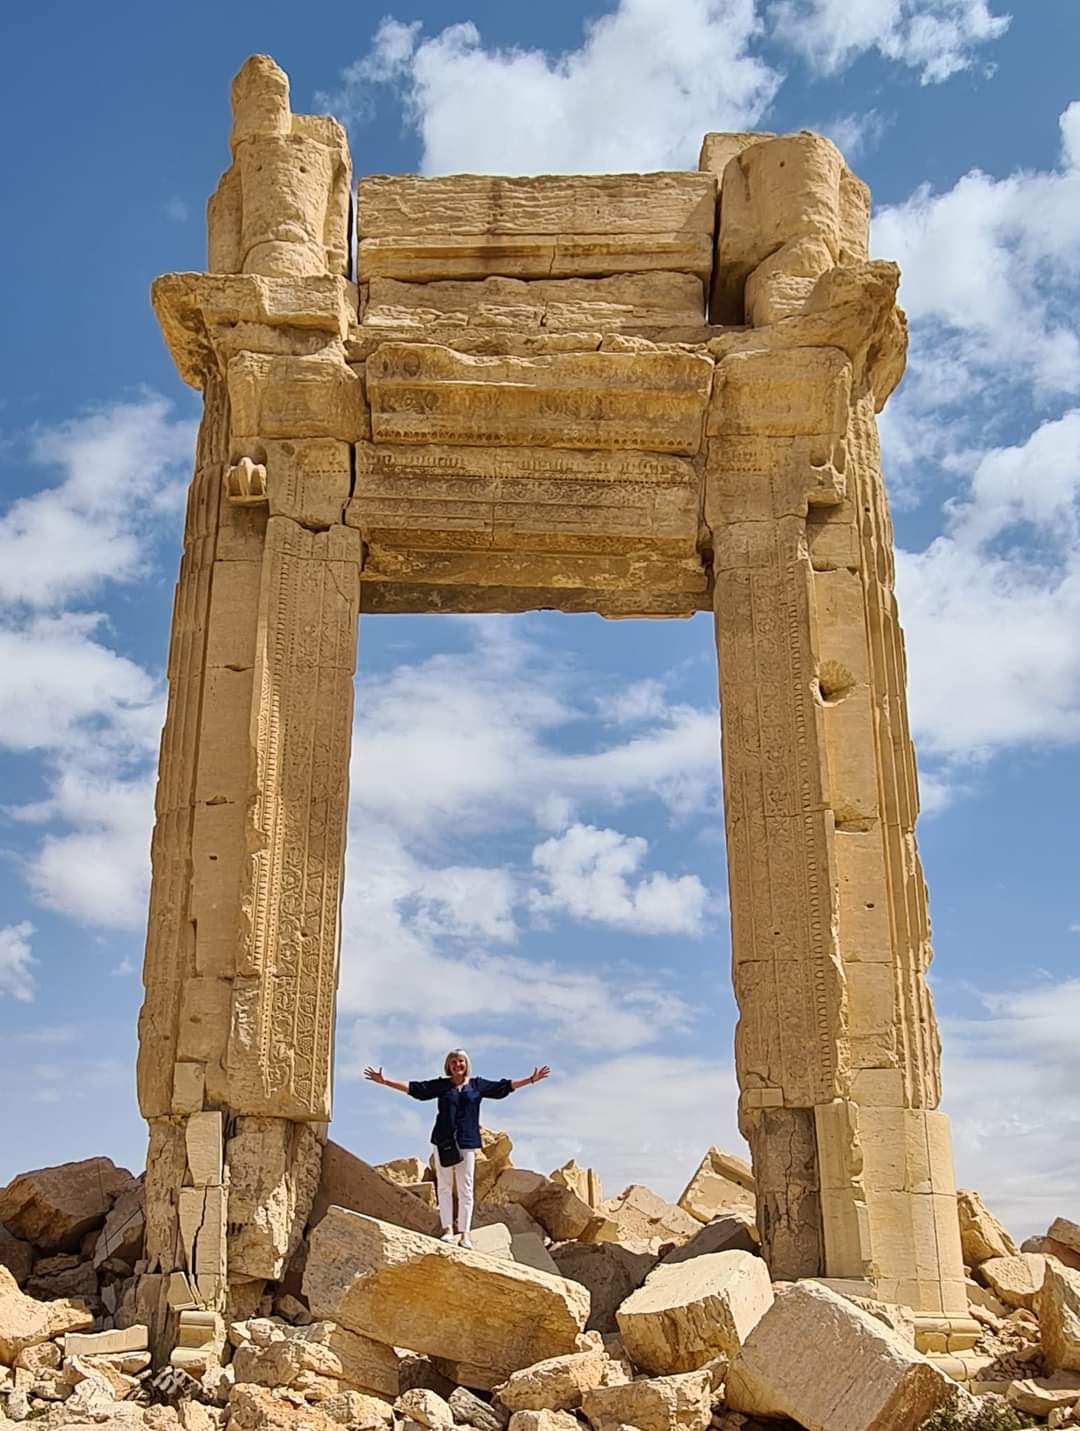 Entrance gate of Palmyra, Syria